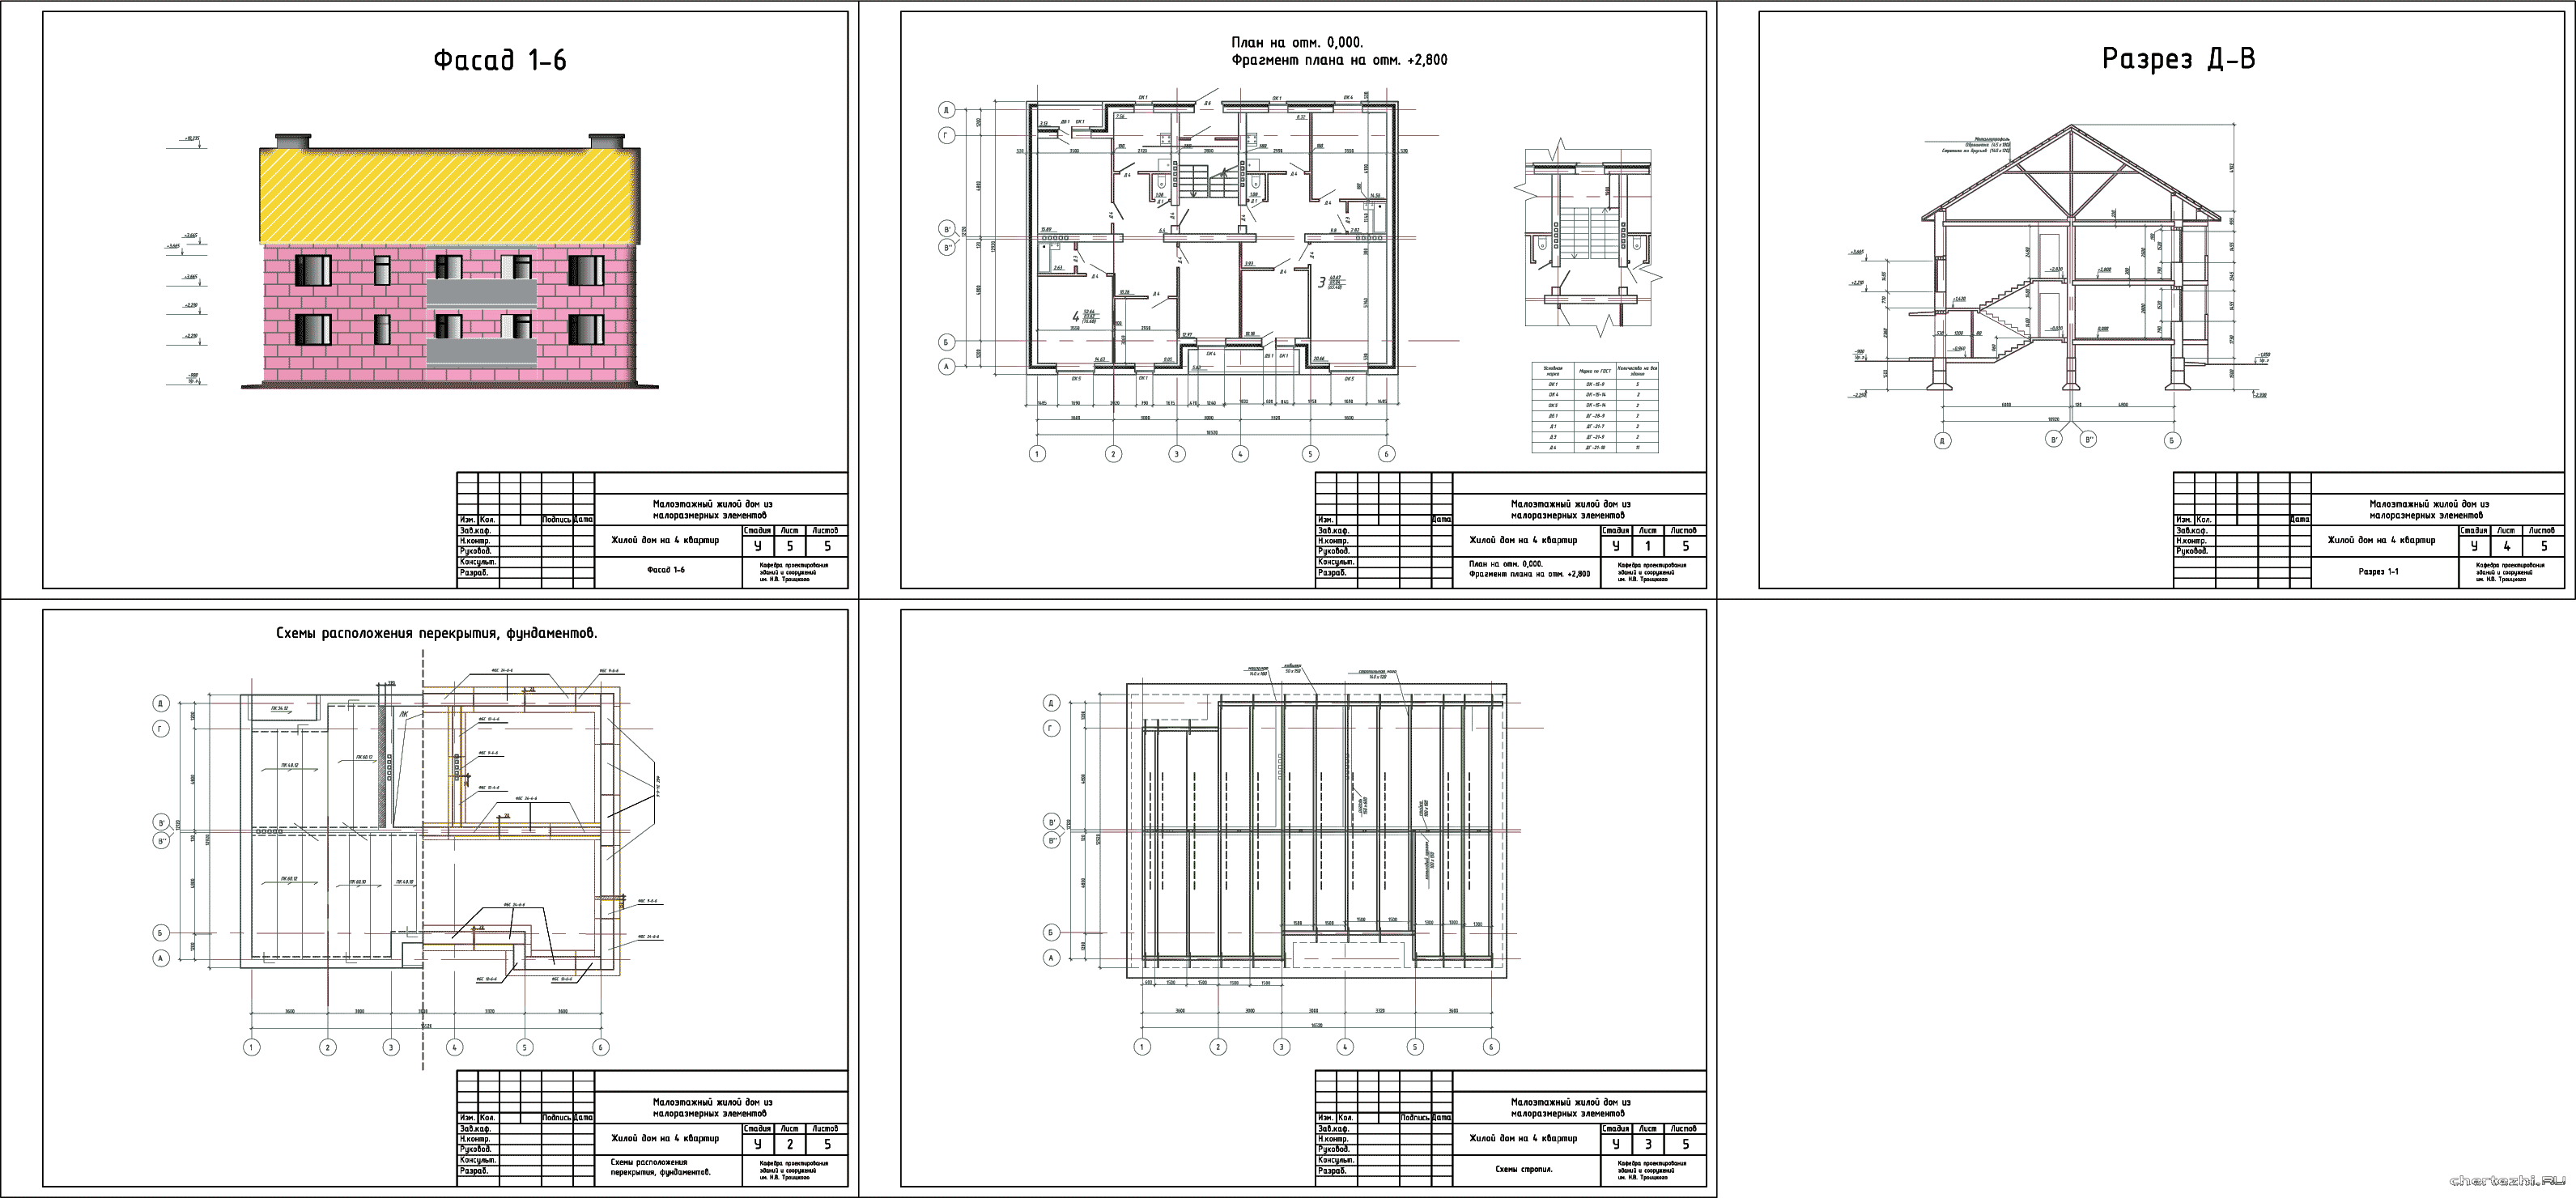 Курсовая работа по теме Строительство жилого 4-х этажного 2-х секционного дома на 16 квартир